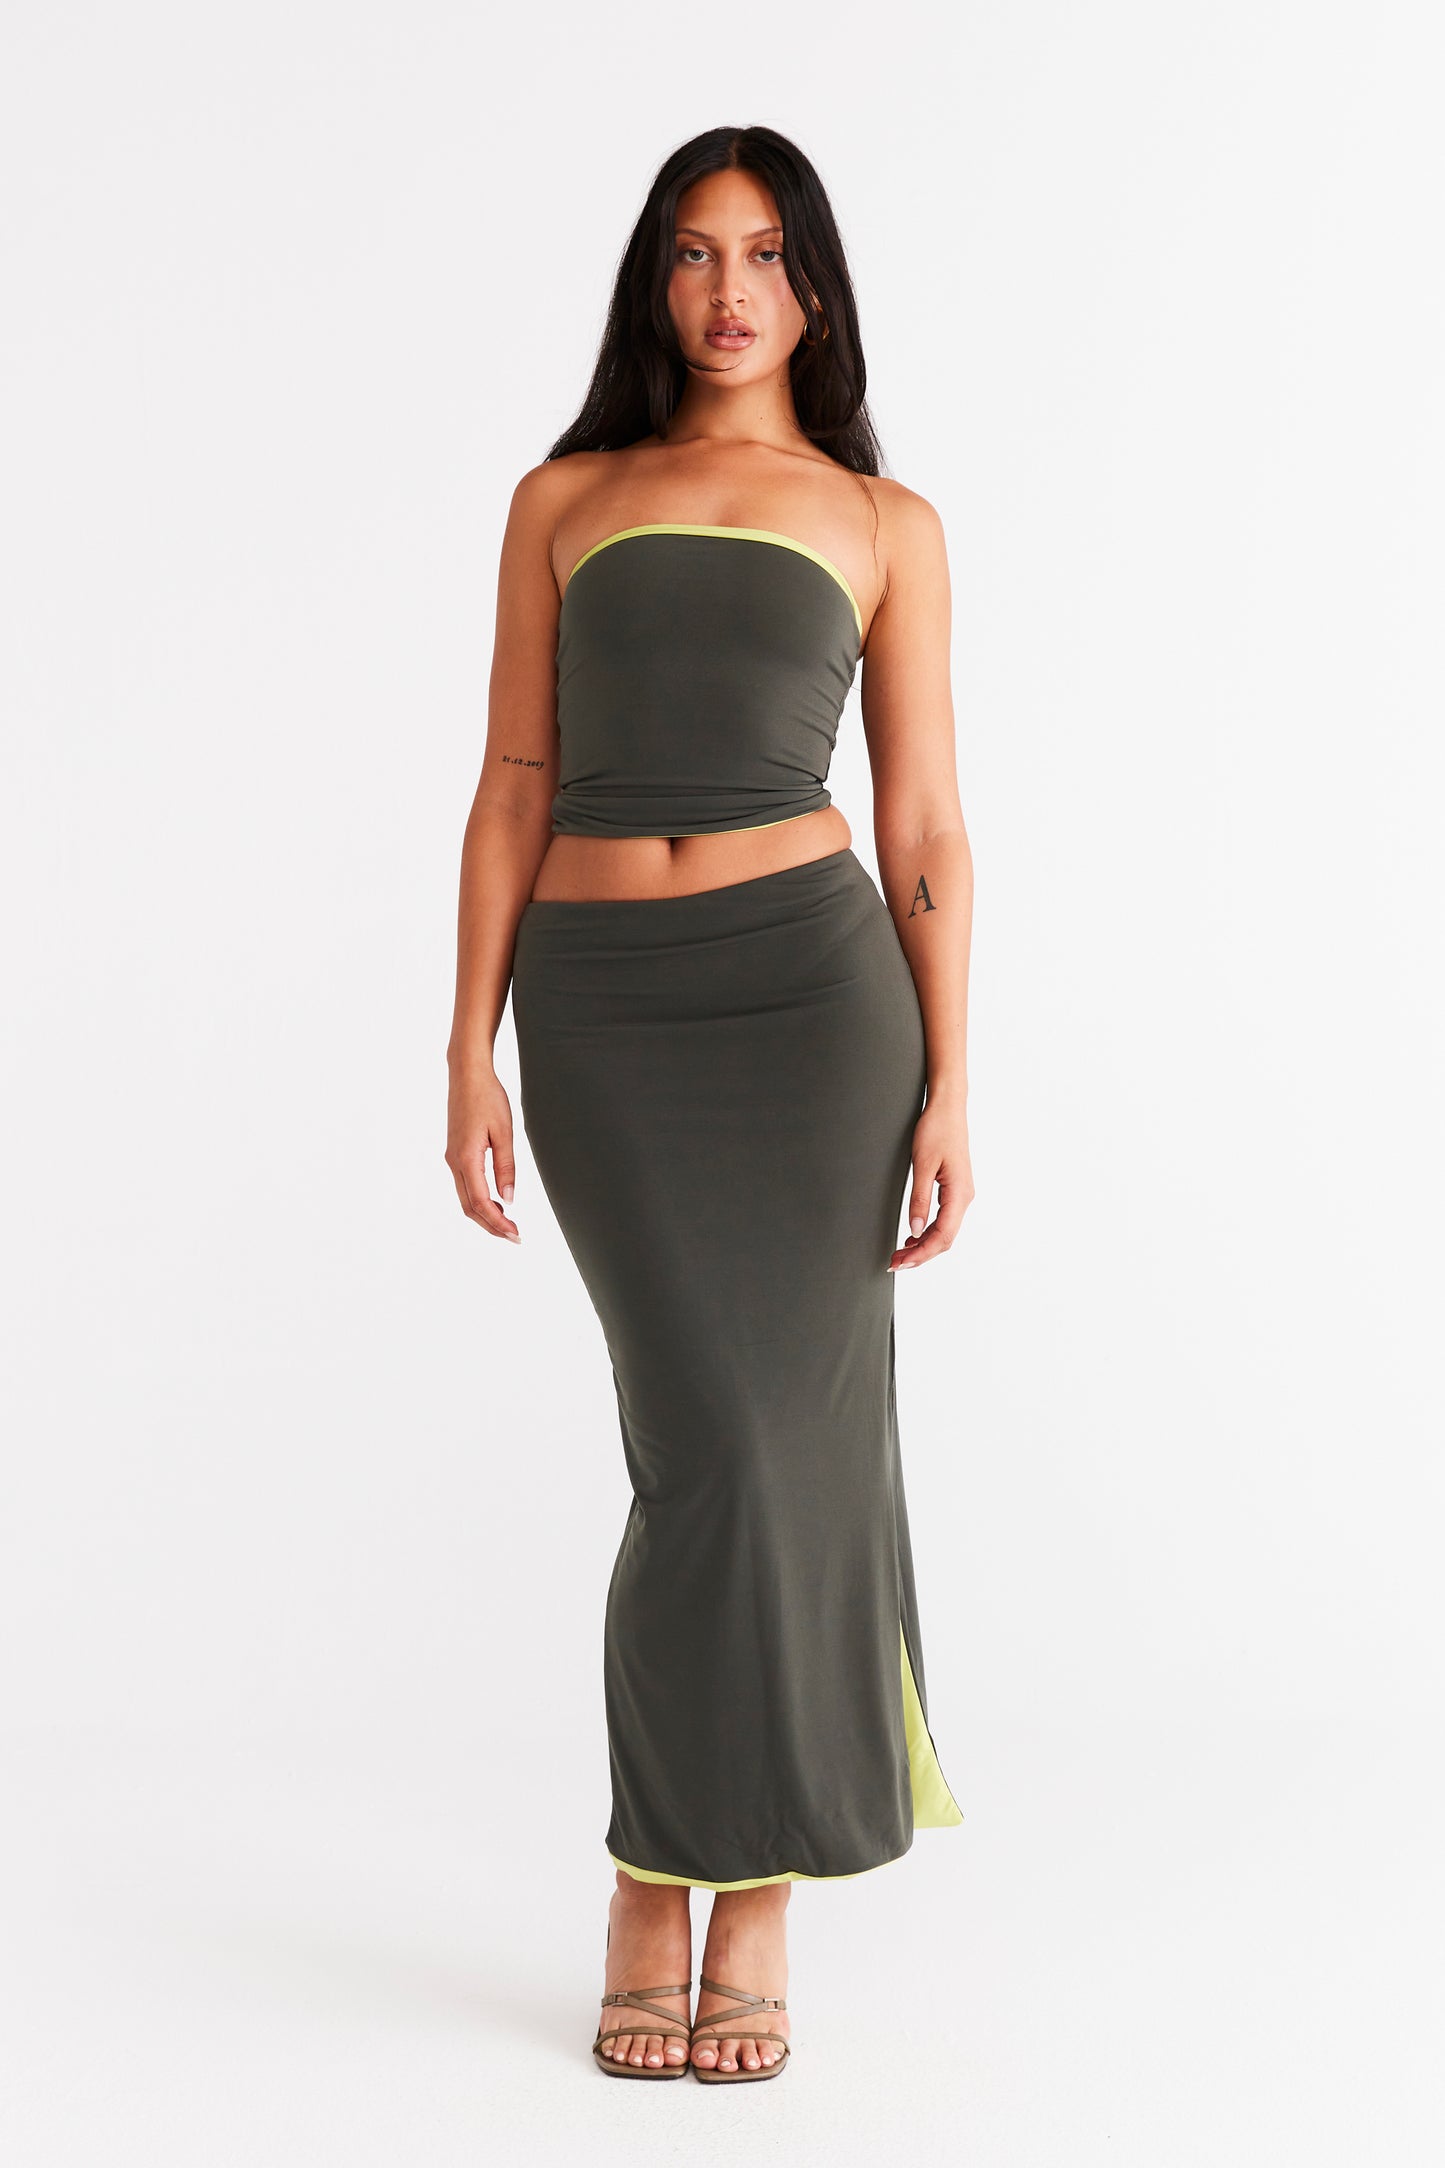 Nova Skirt - Khaki and Lime